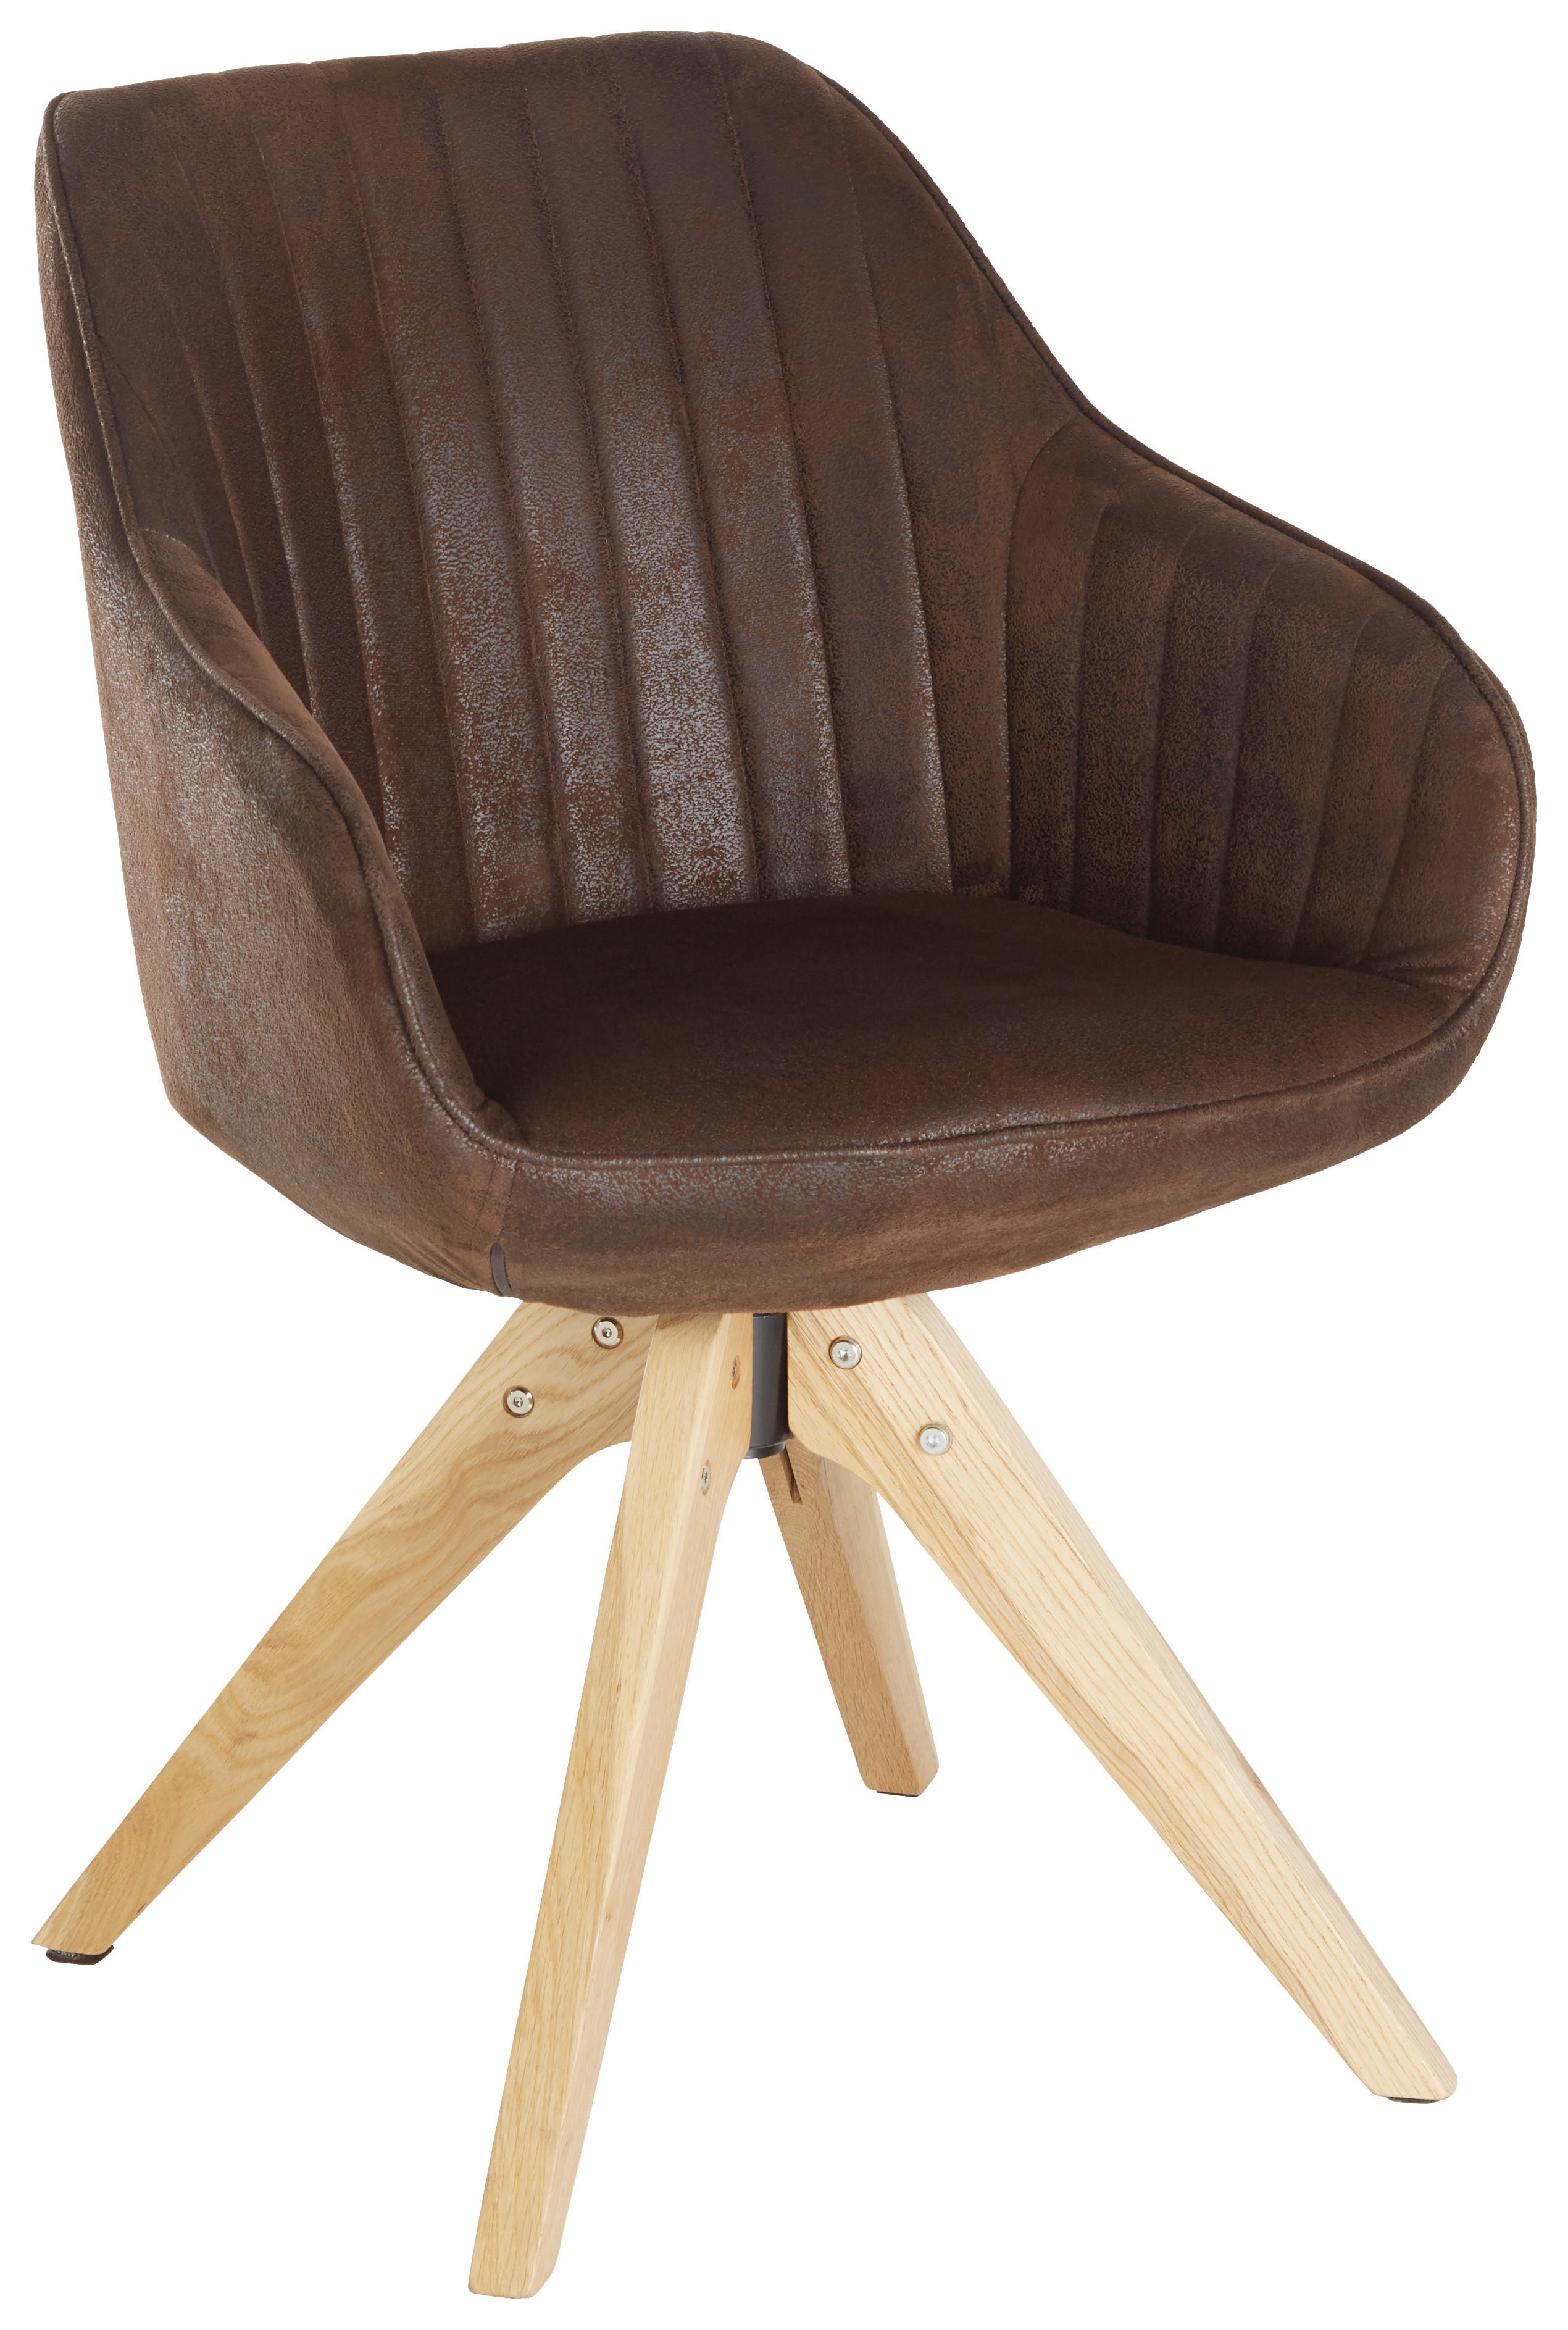 Židle S Područkami Chill - tmavě hnědá/barvy dubu, dřevo/textil (60/83/65cm) - Modern Living